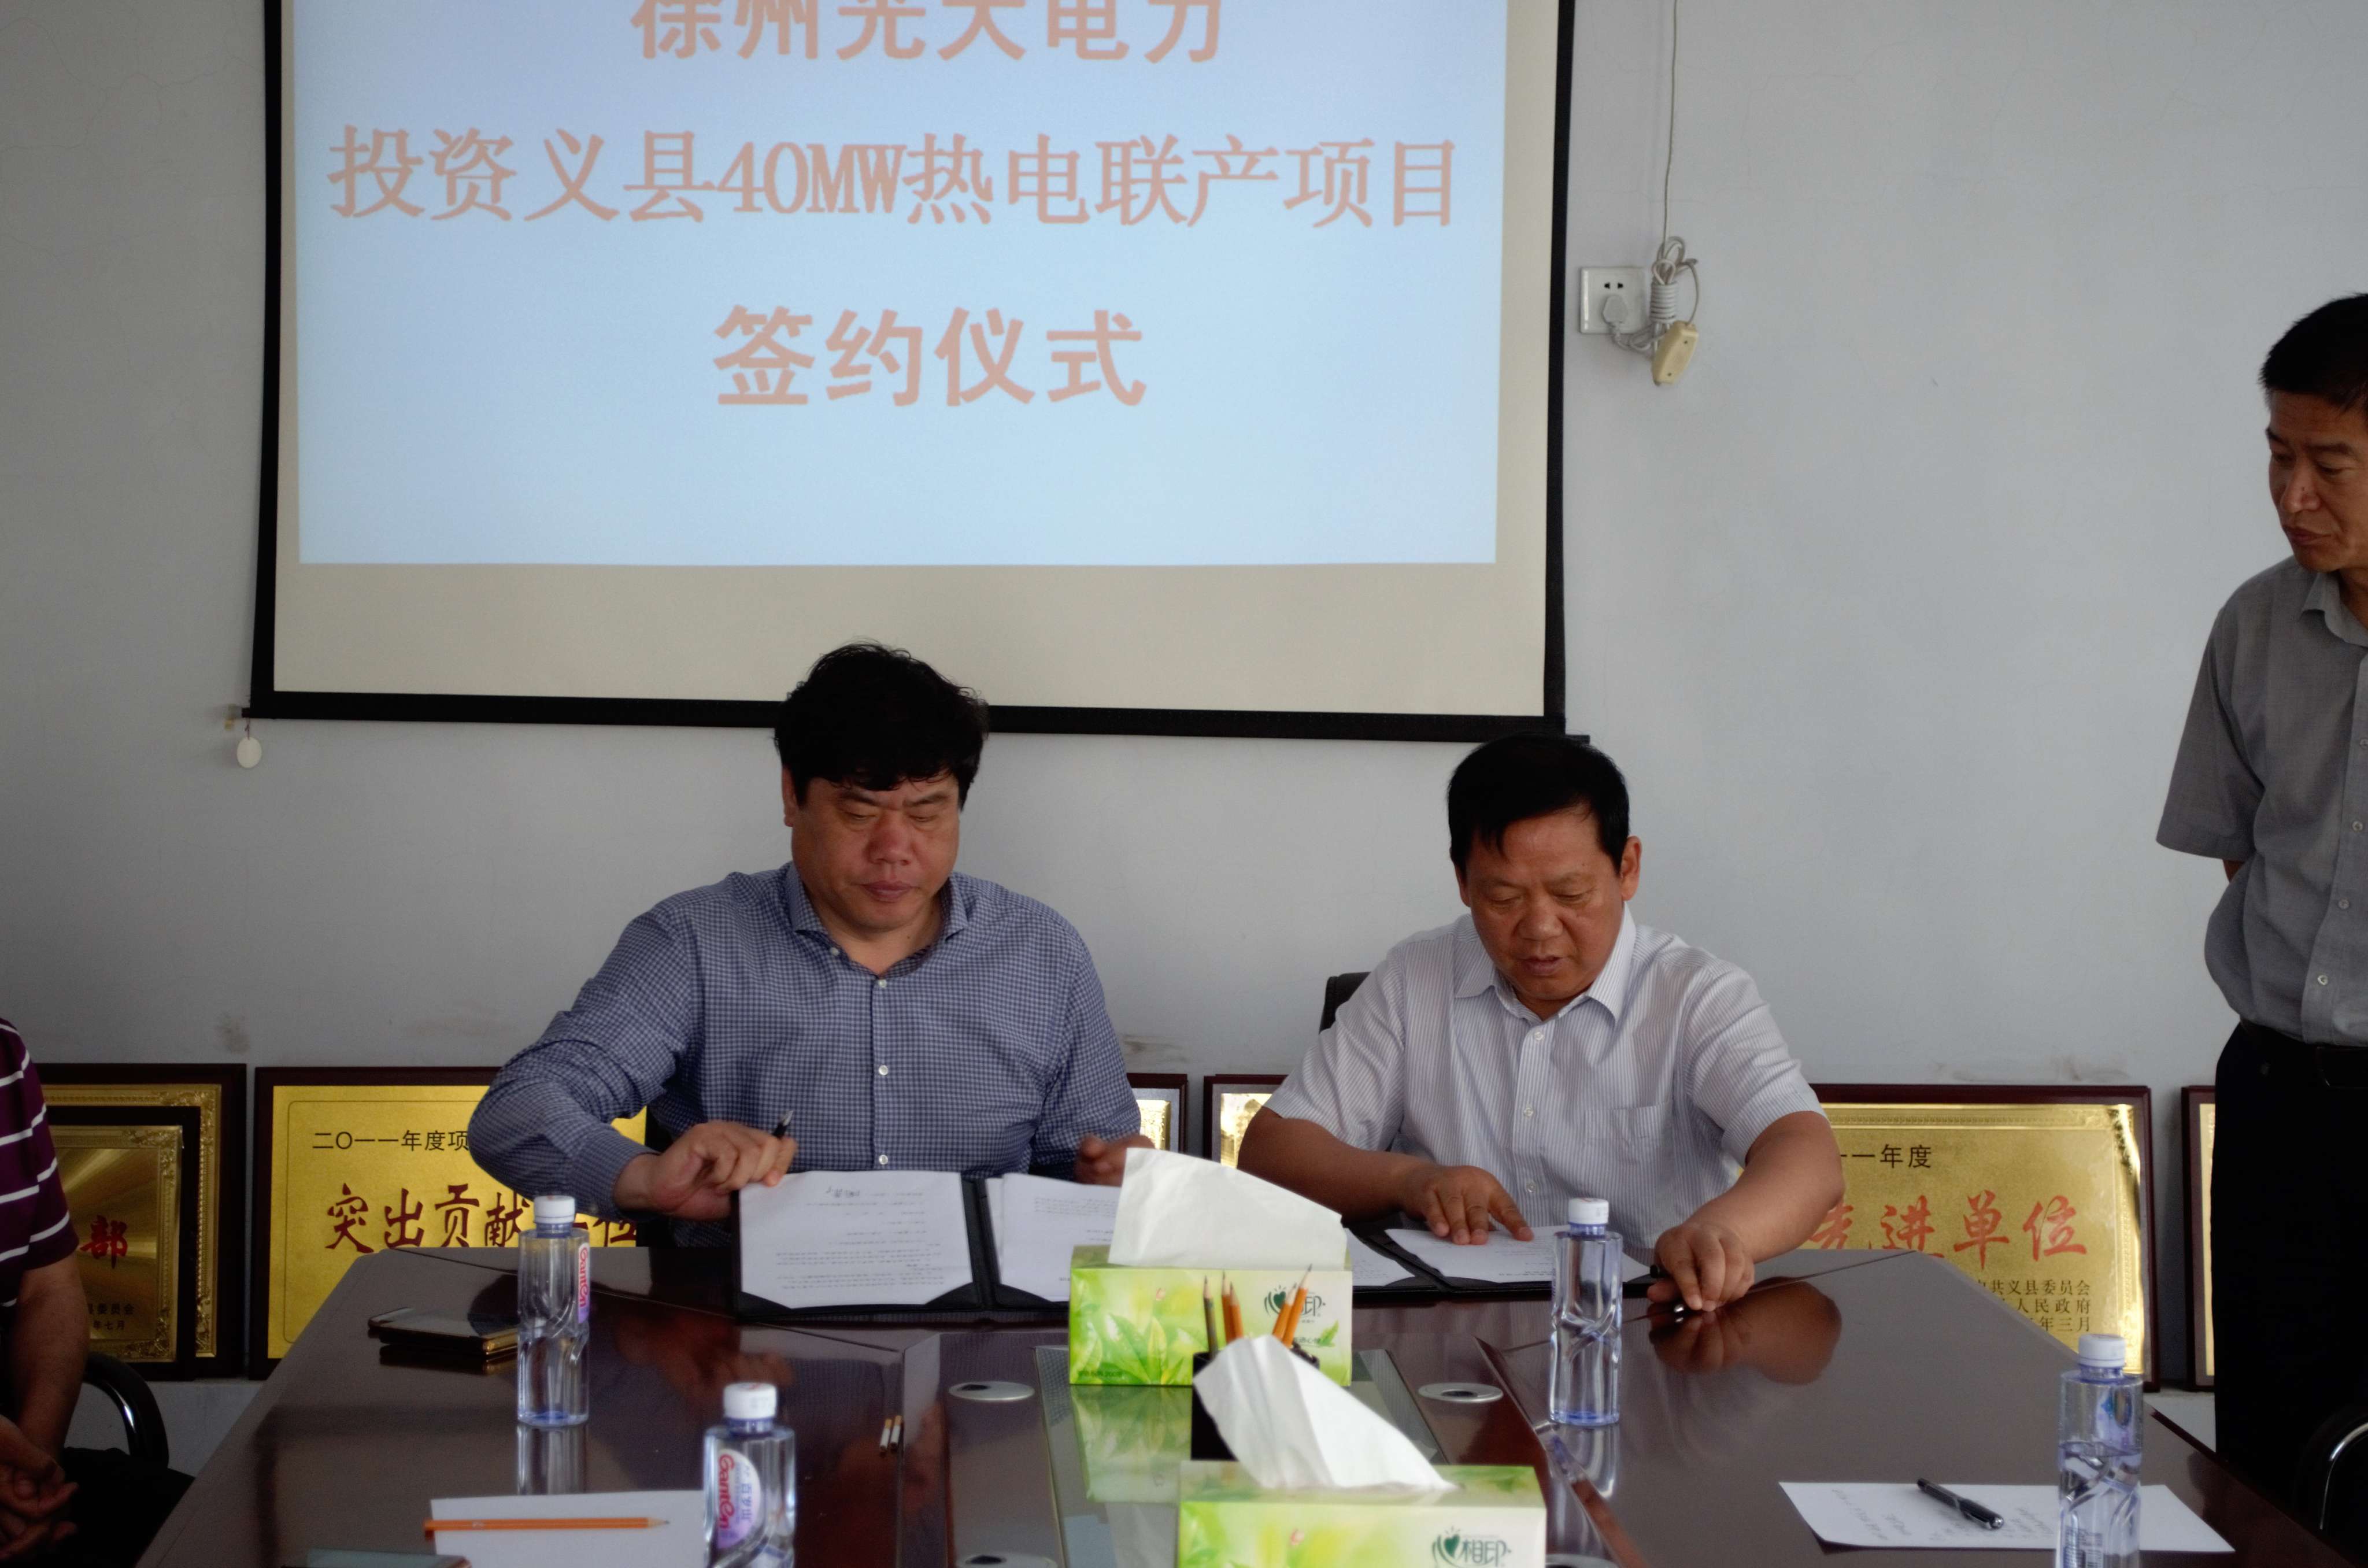 照片左一义县副县长杜鑫峰、左二徐州光大电力董事长周平